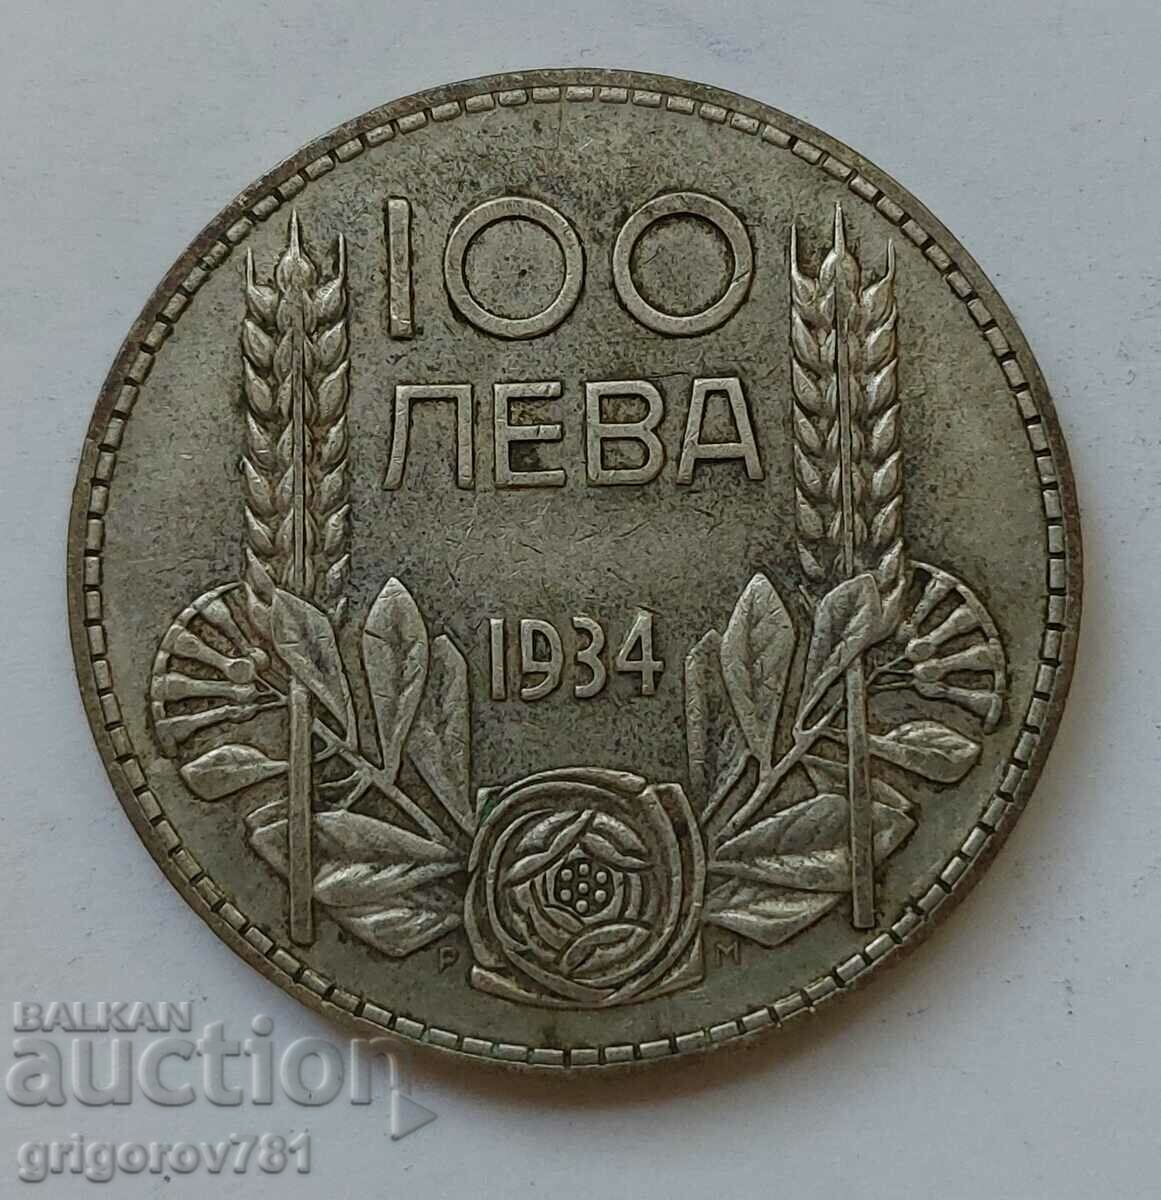 100 leva silver Bulgaria 1934 - silver coin #10